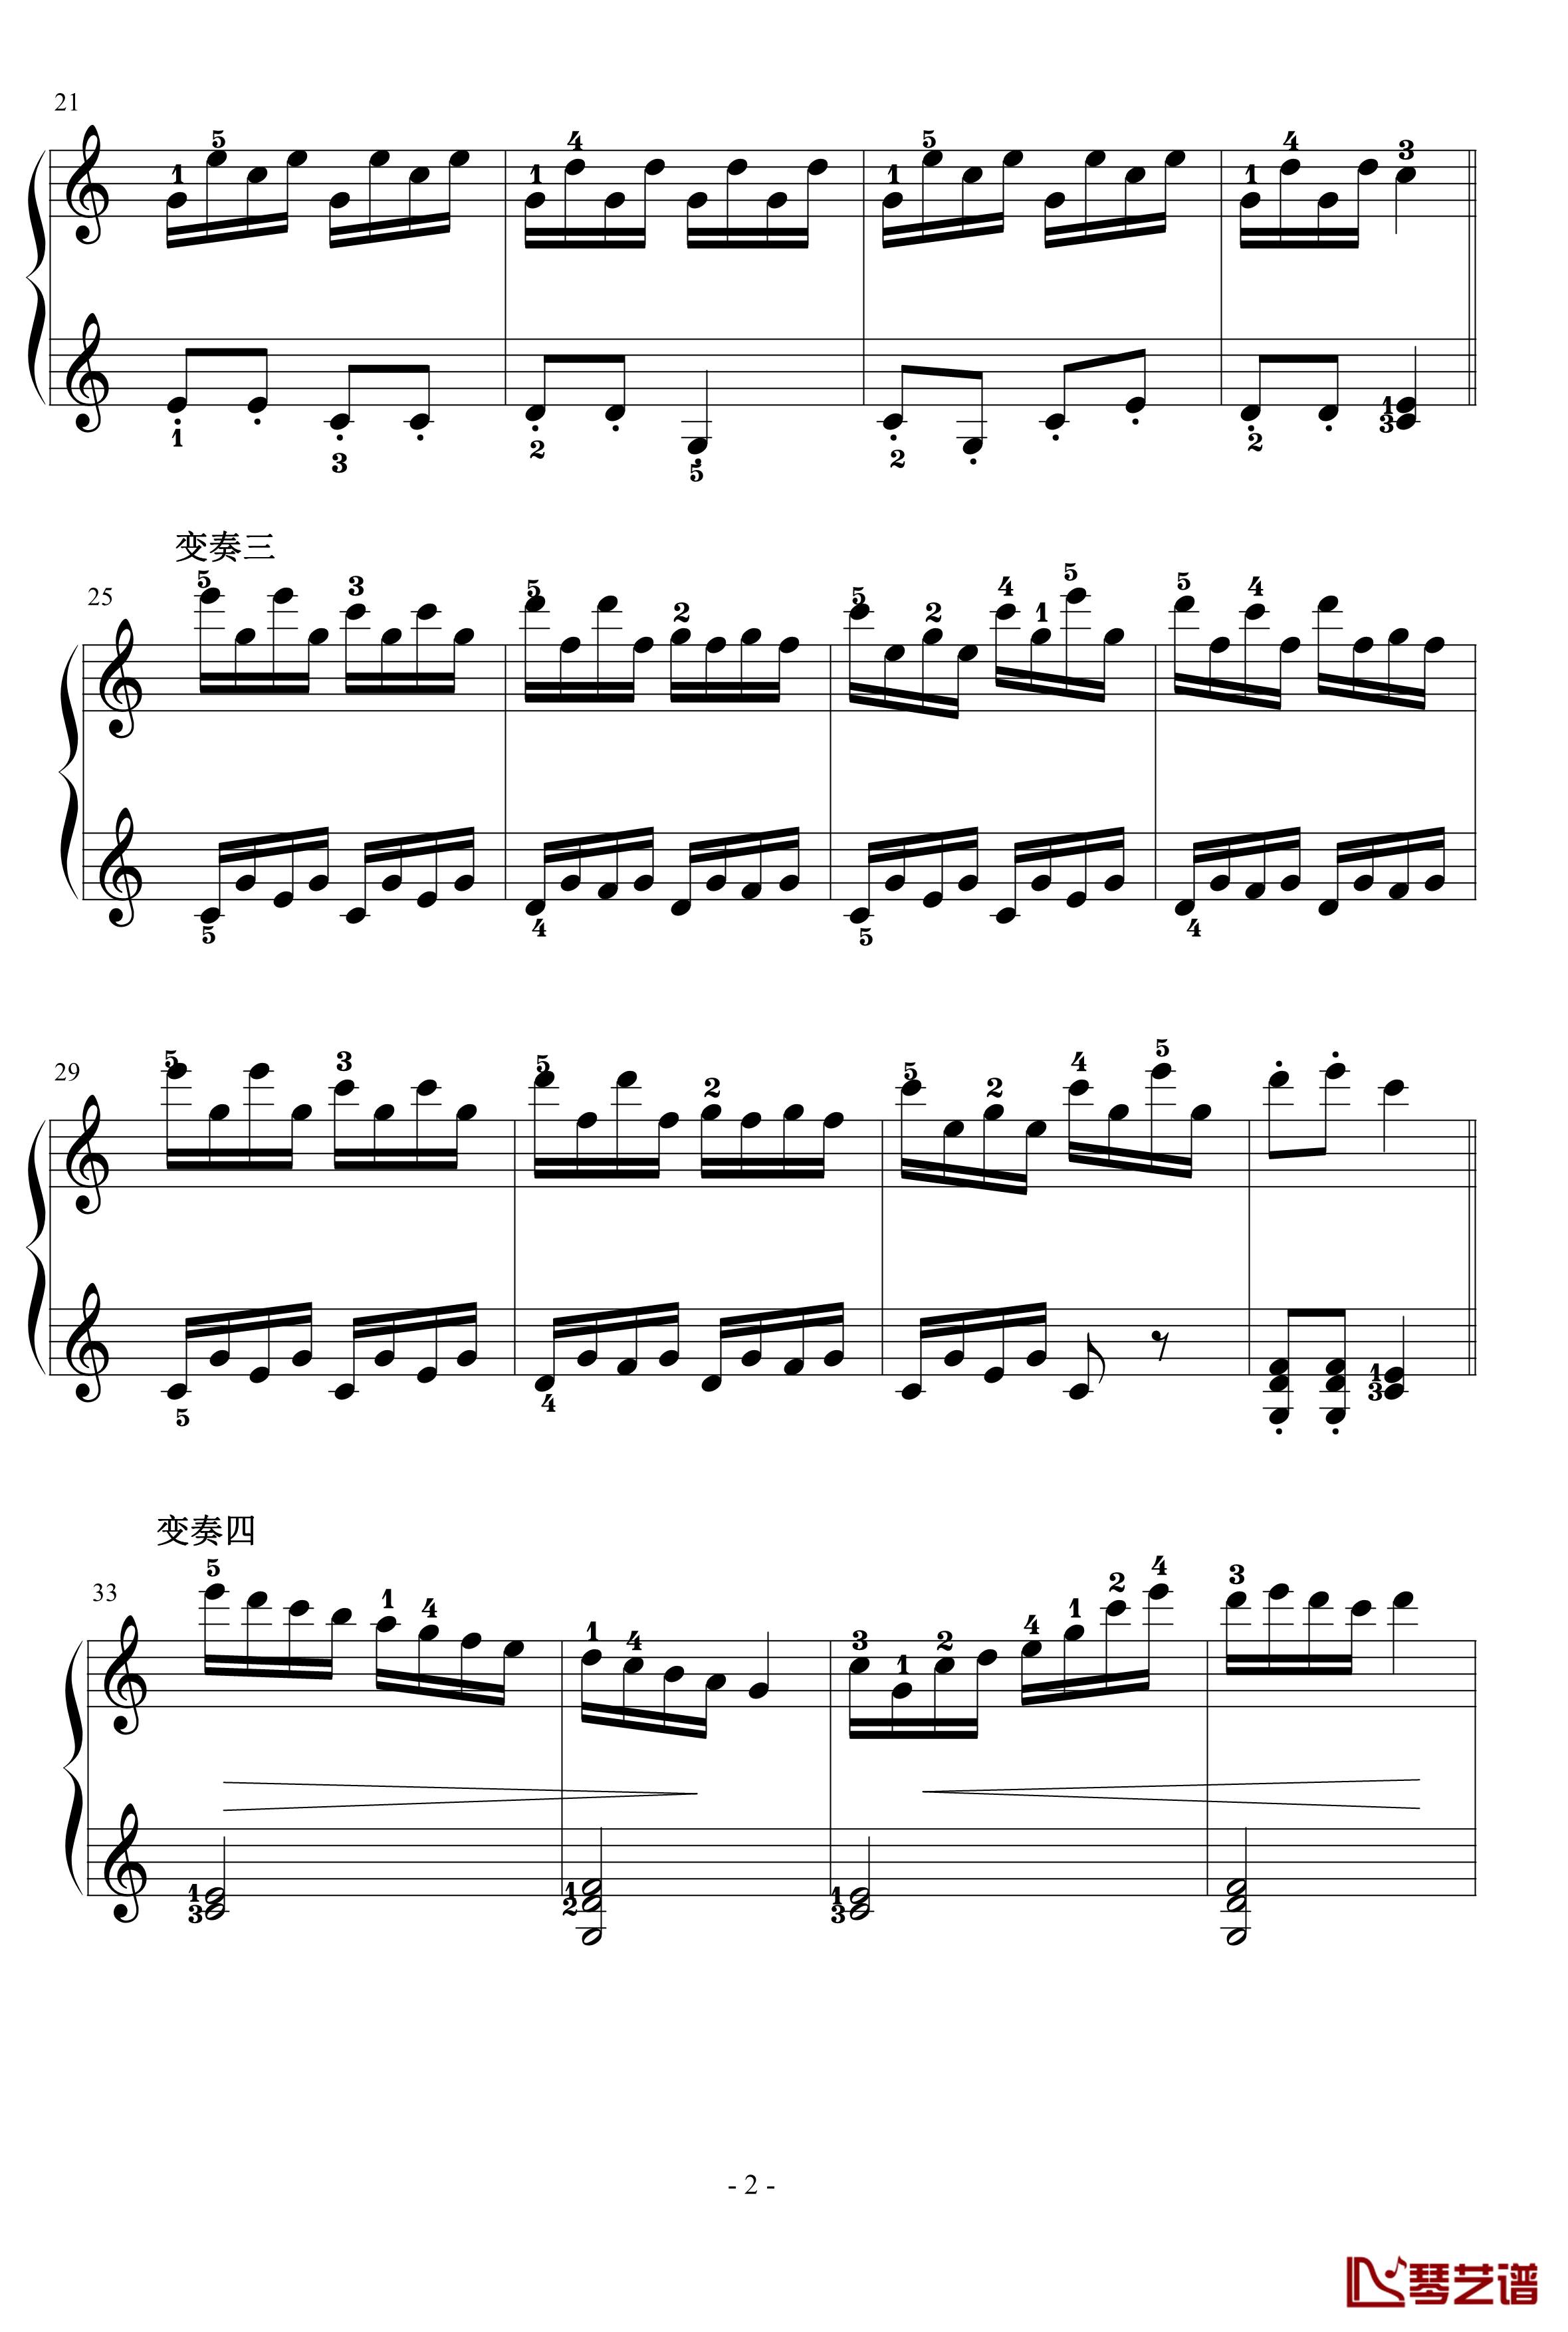 乒乓变奏曲钢琴谱-儿童歌曲